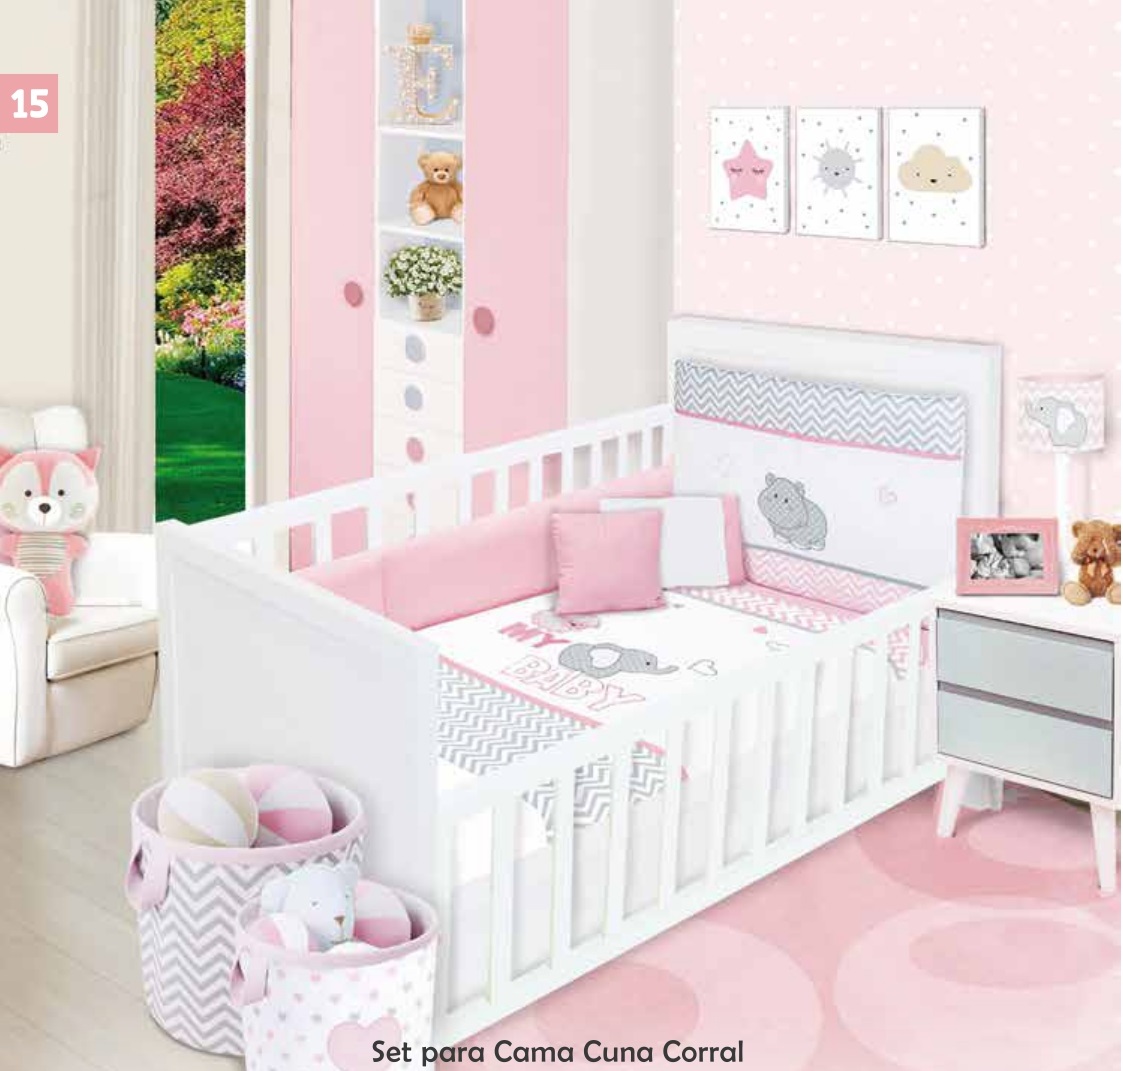 Catálogo de cama cunas y accesorios para bebés